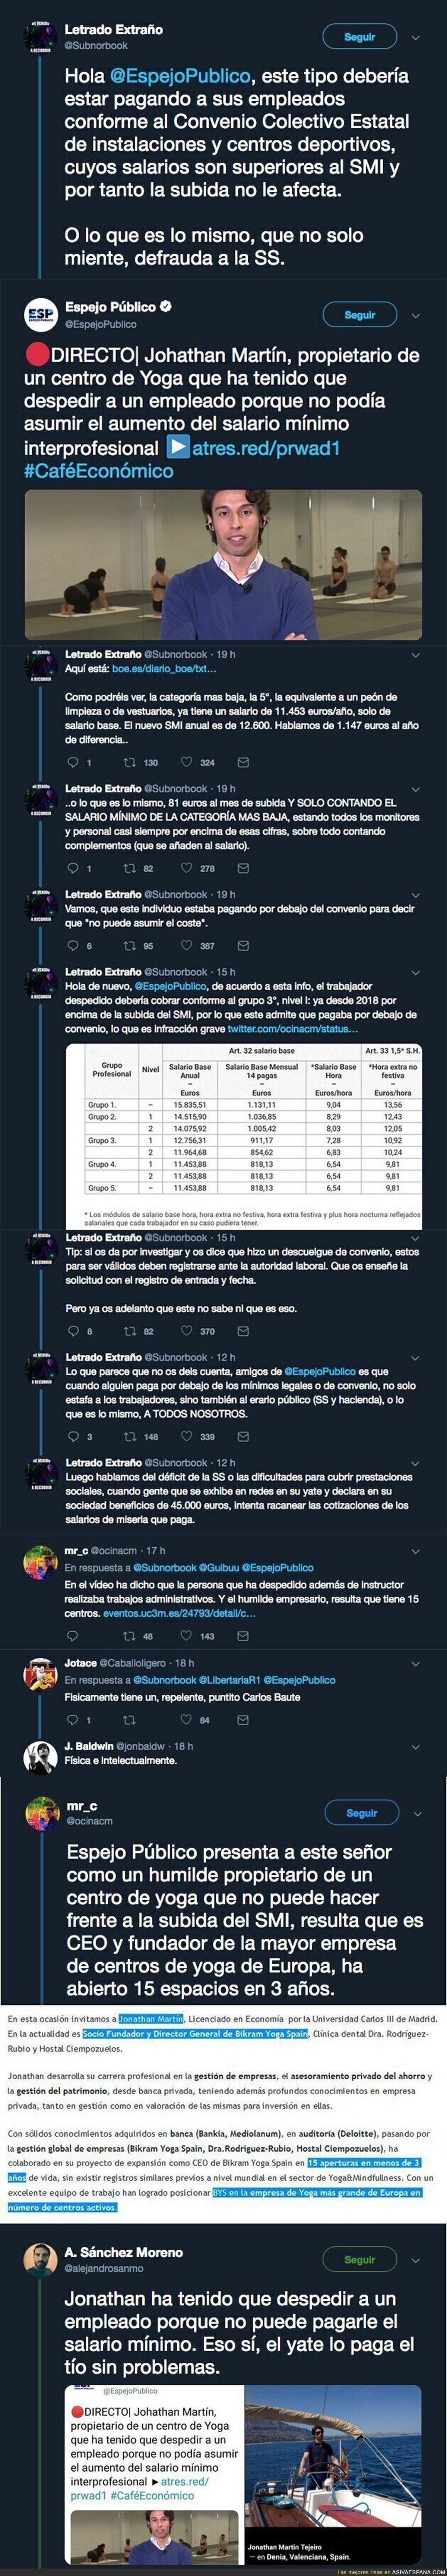 'Espejo Público' entrevista a esta persona que dice no poder pagar el 'salario mínimo' de 900€ y Twitter descubre la gran mentira de Antena 3